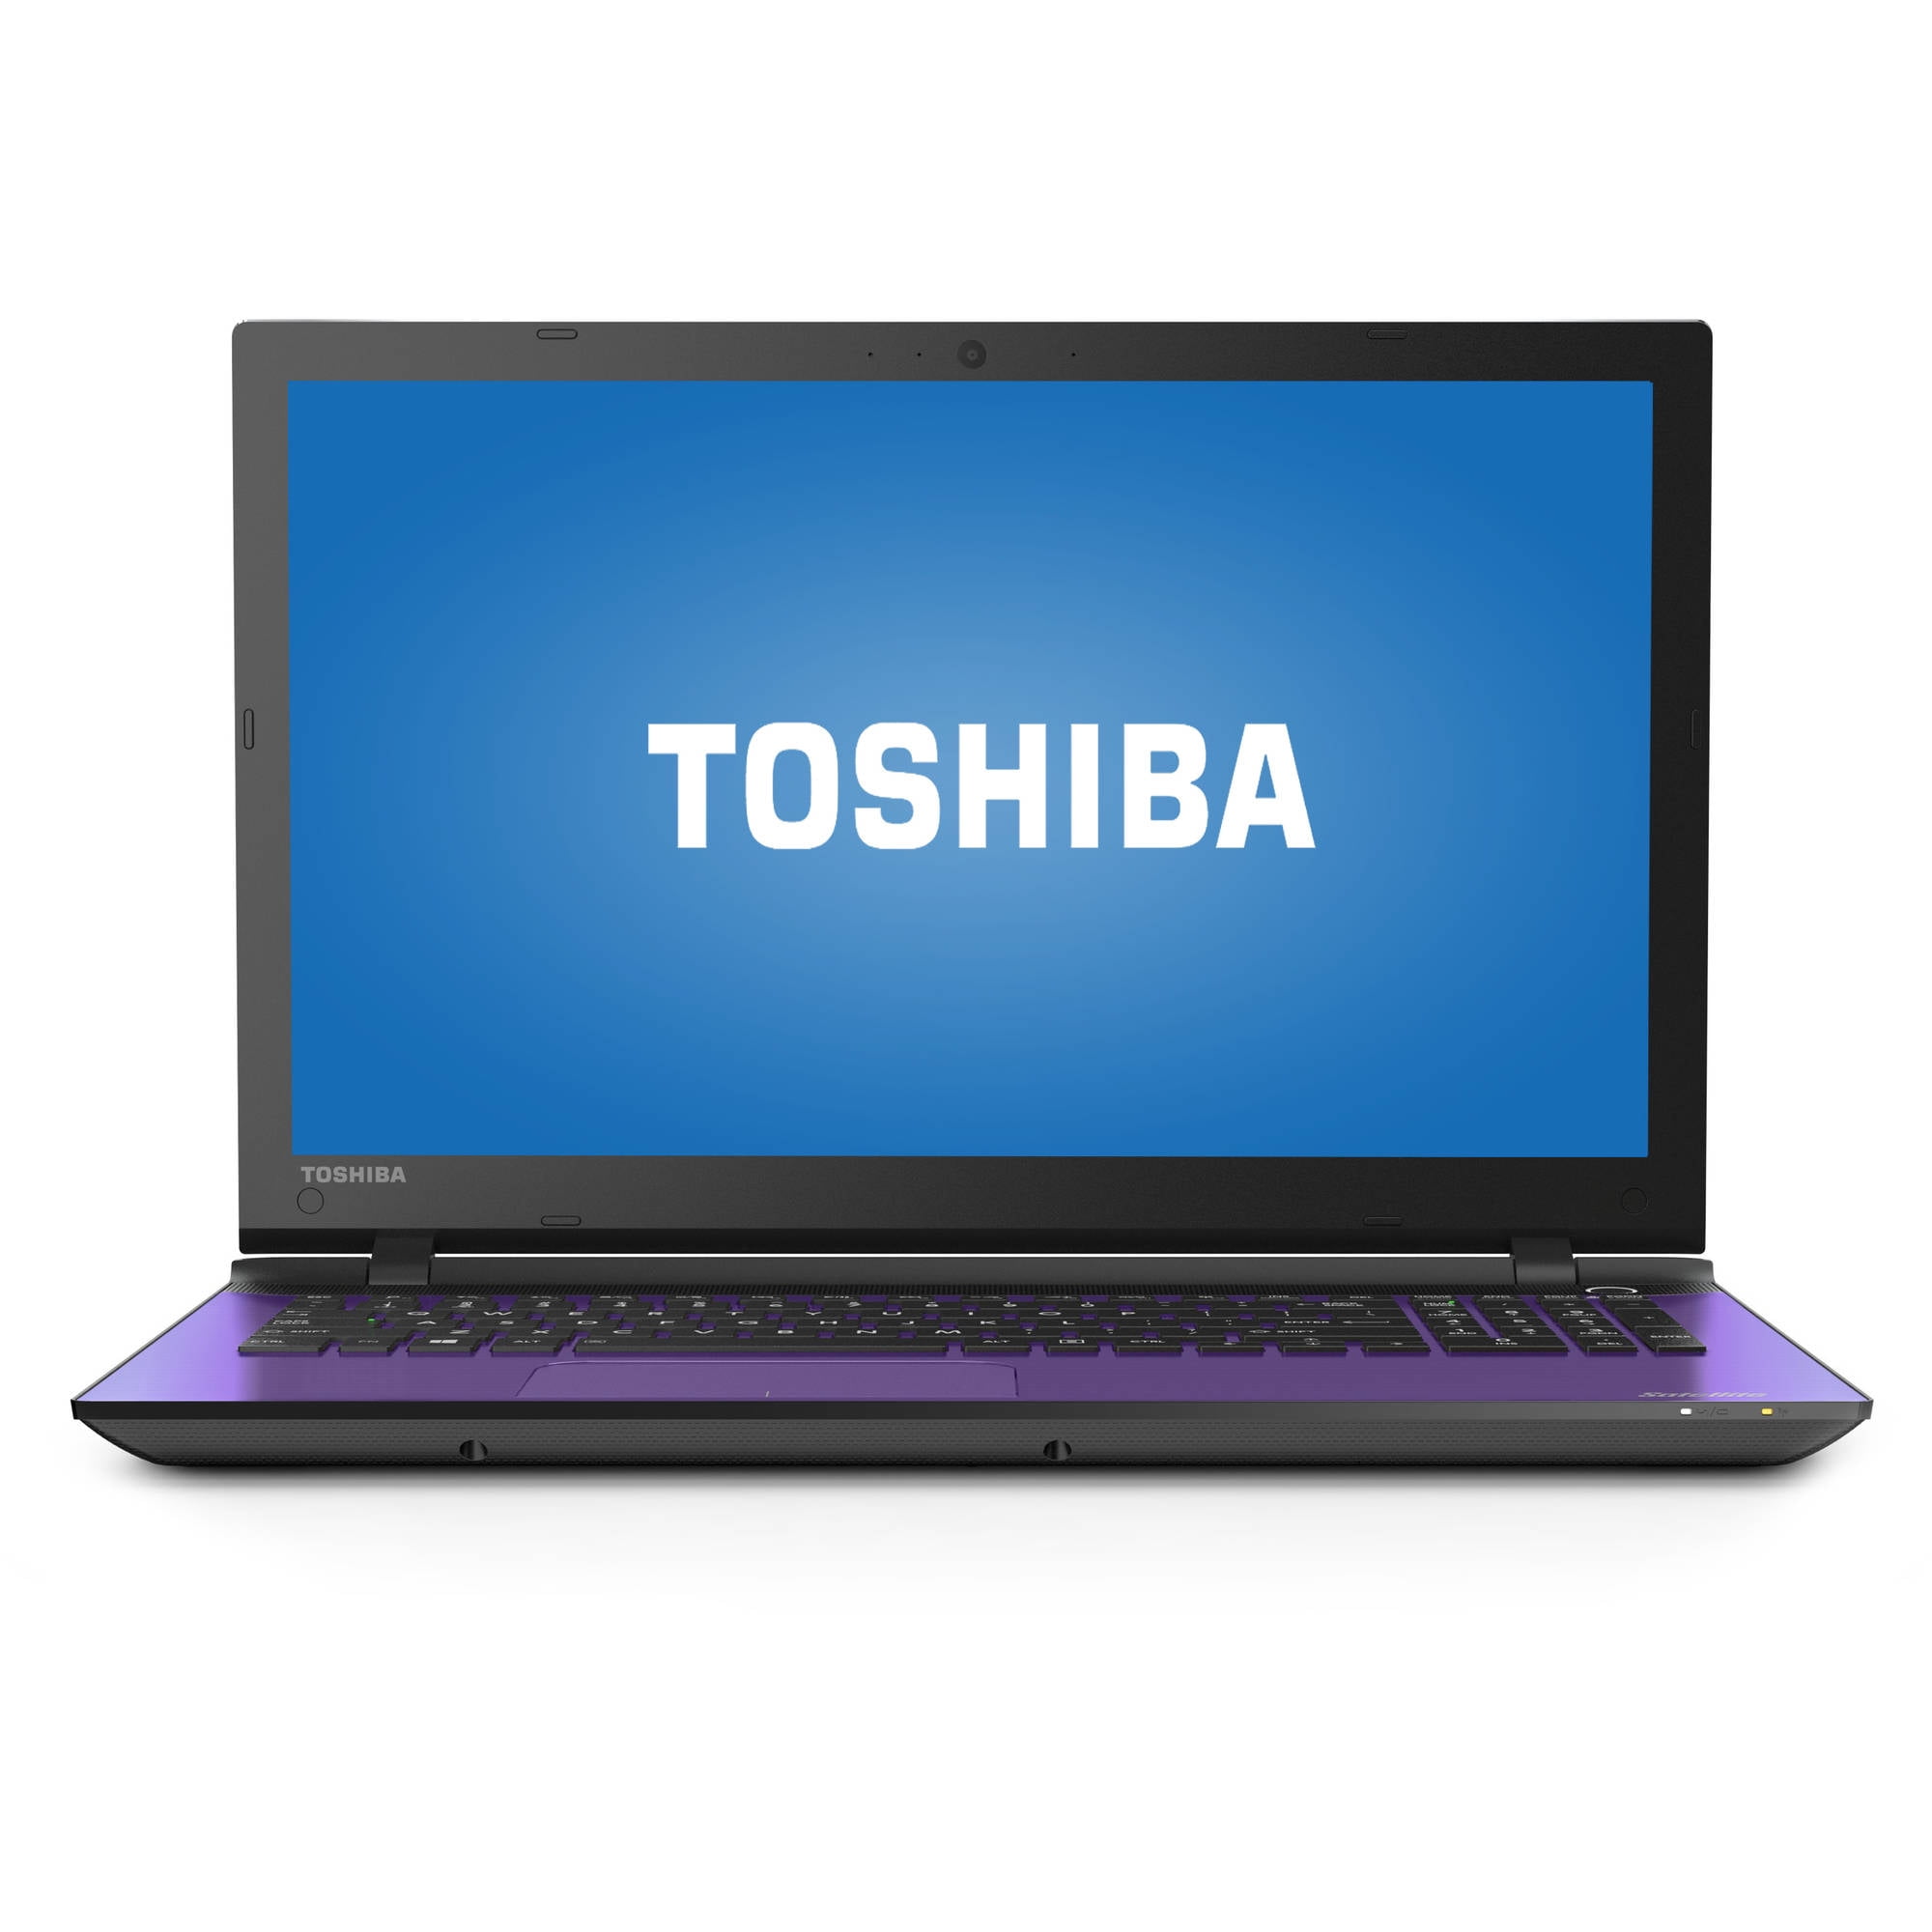 toshiba laptop images